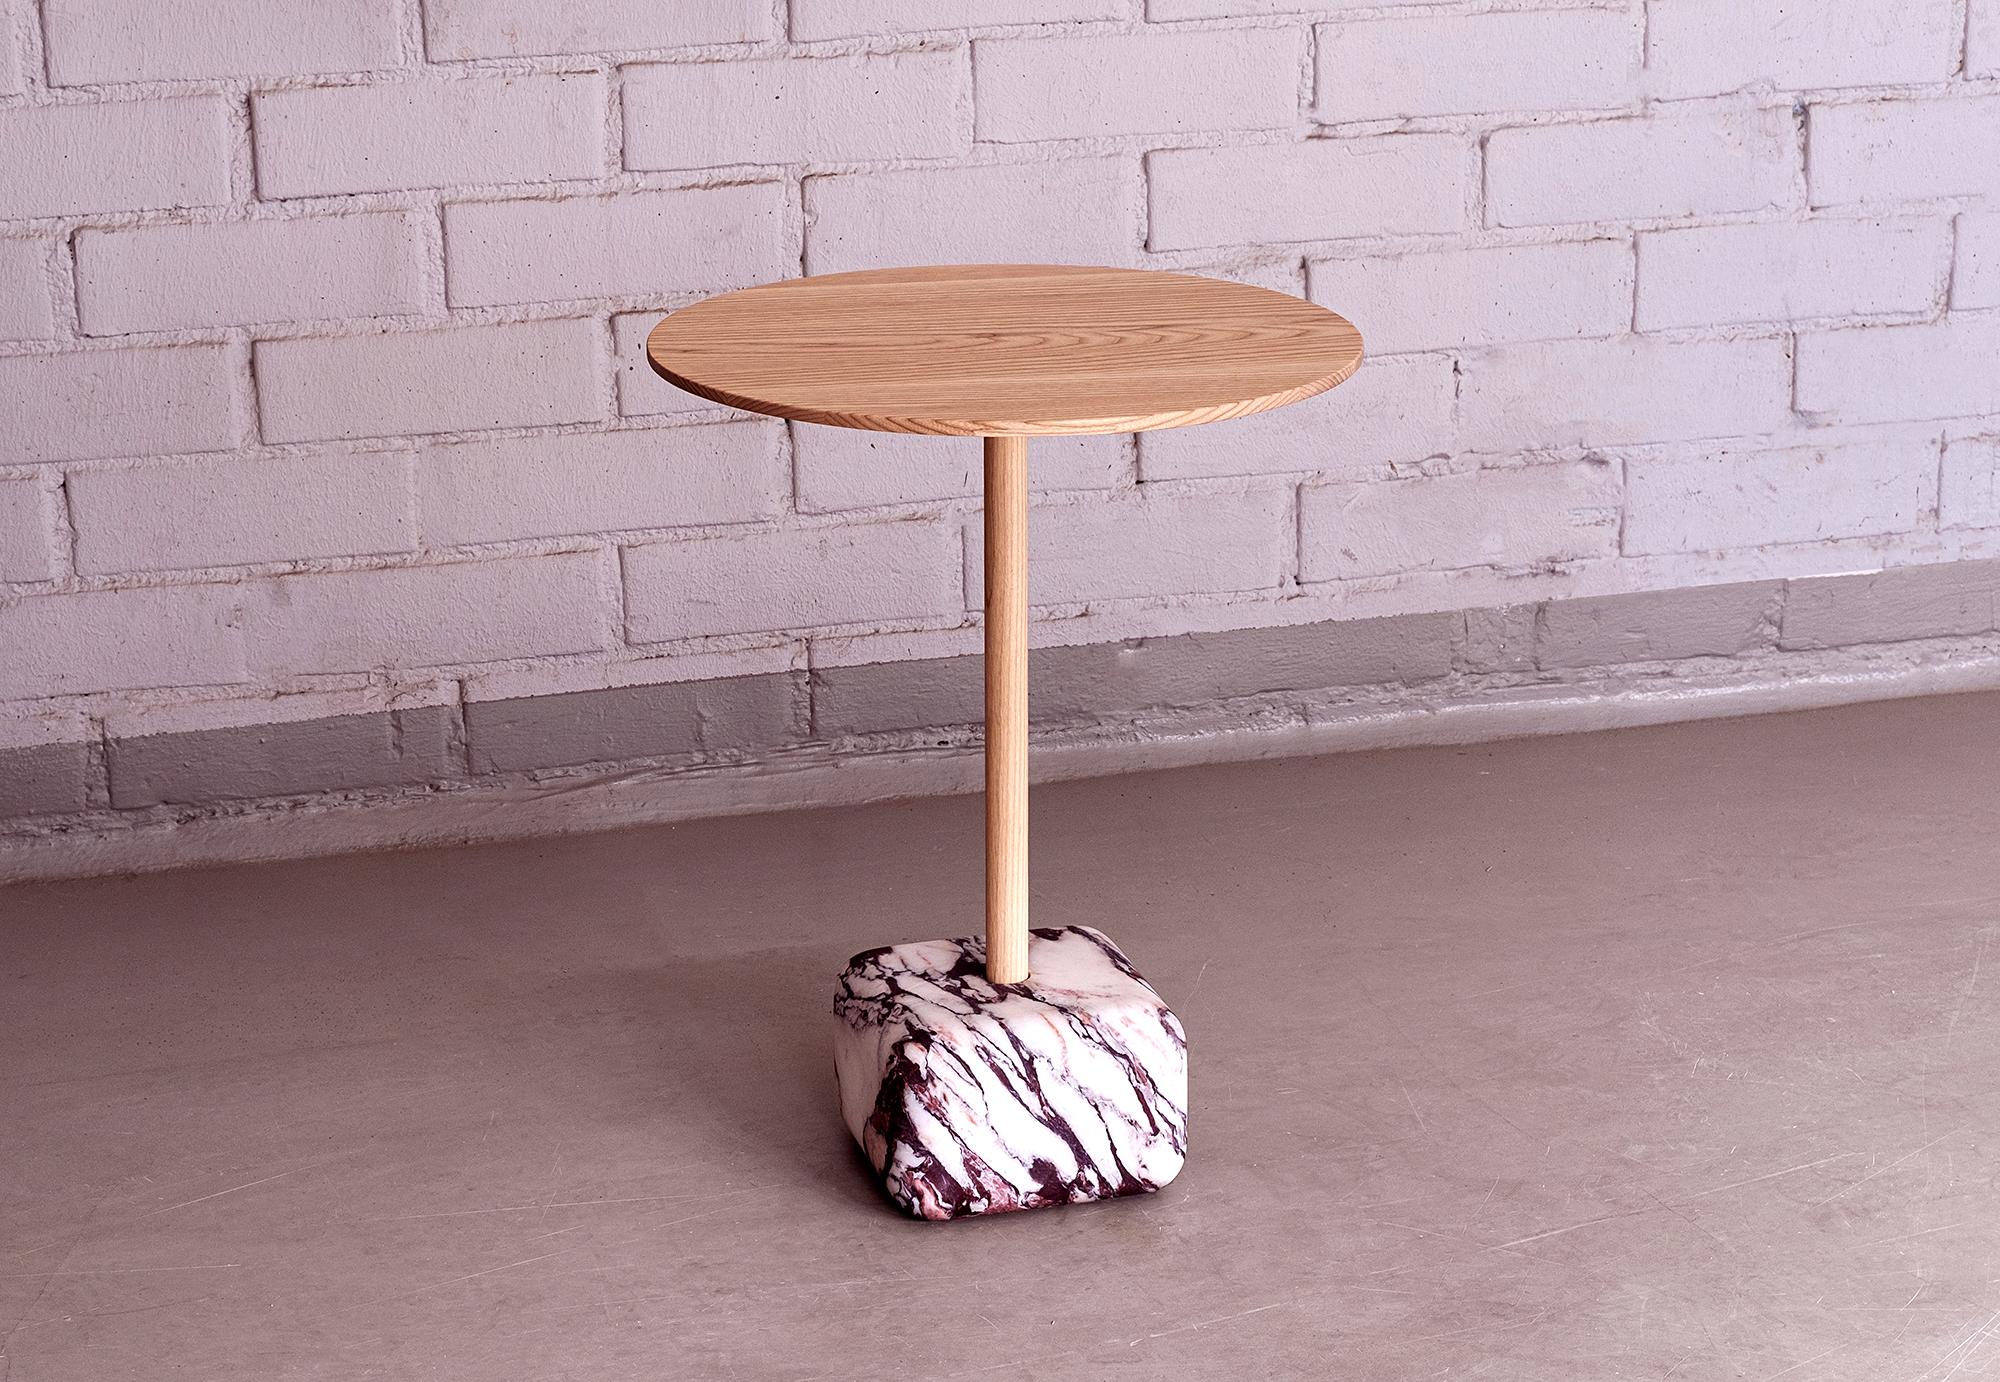 Petite table d'appoint en marbre Arabescato et bois de frêne avec un seul pilier en bois. La base en marbre avec ses angles doux donne à la table une construction stable.